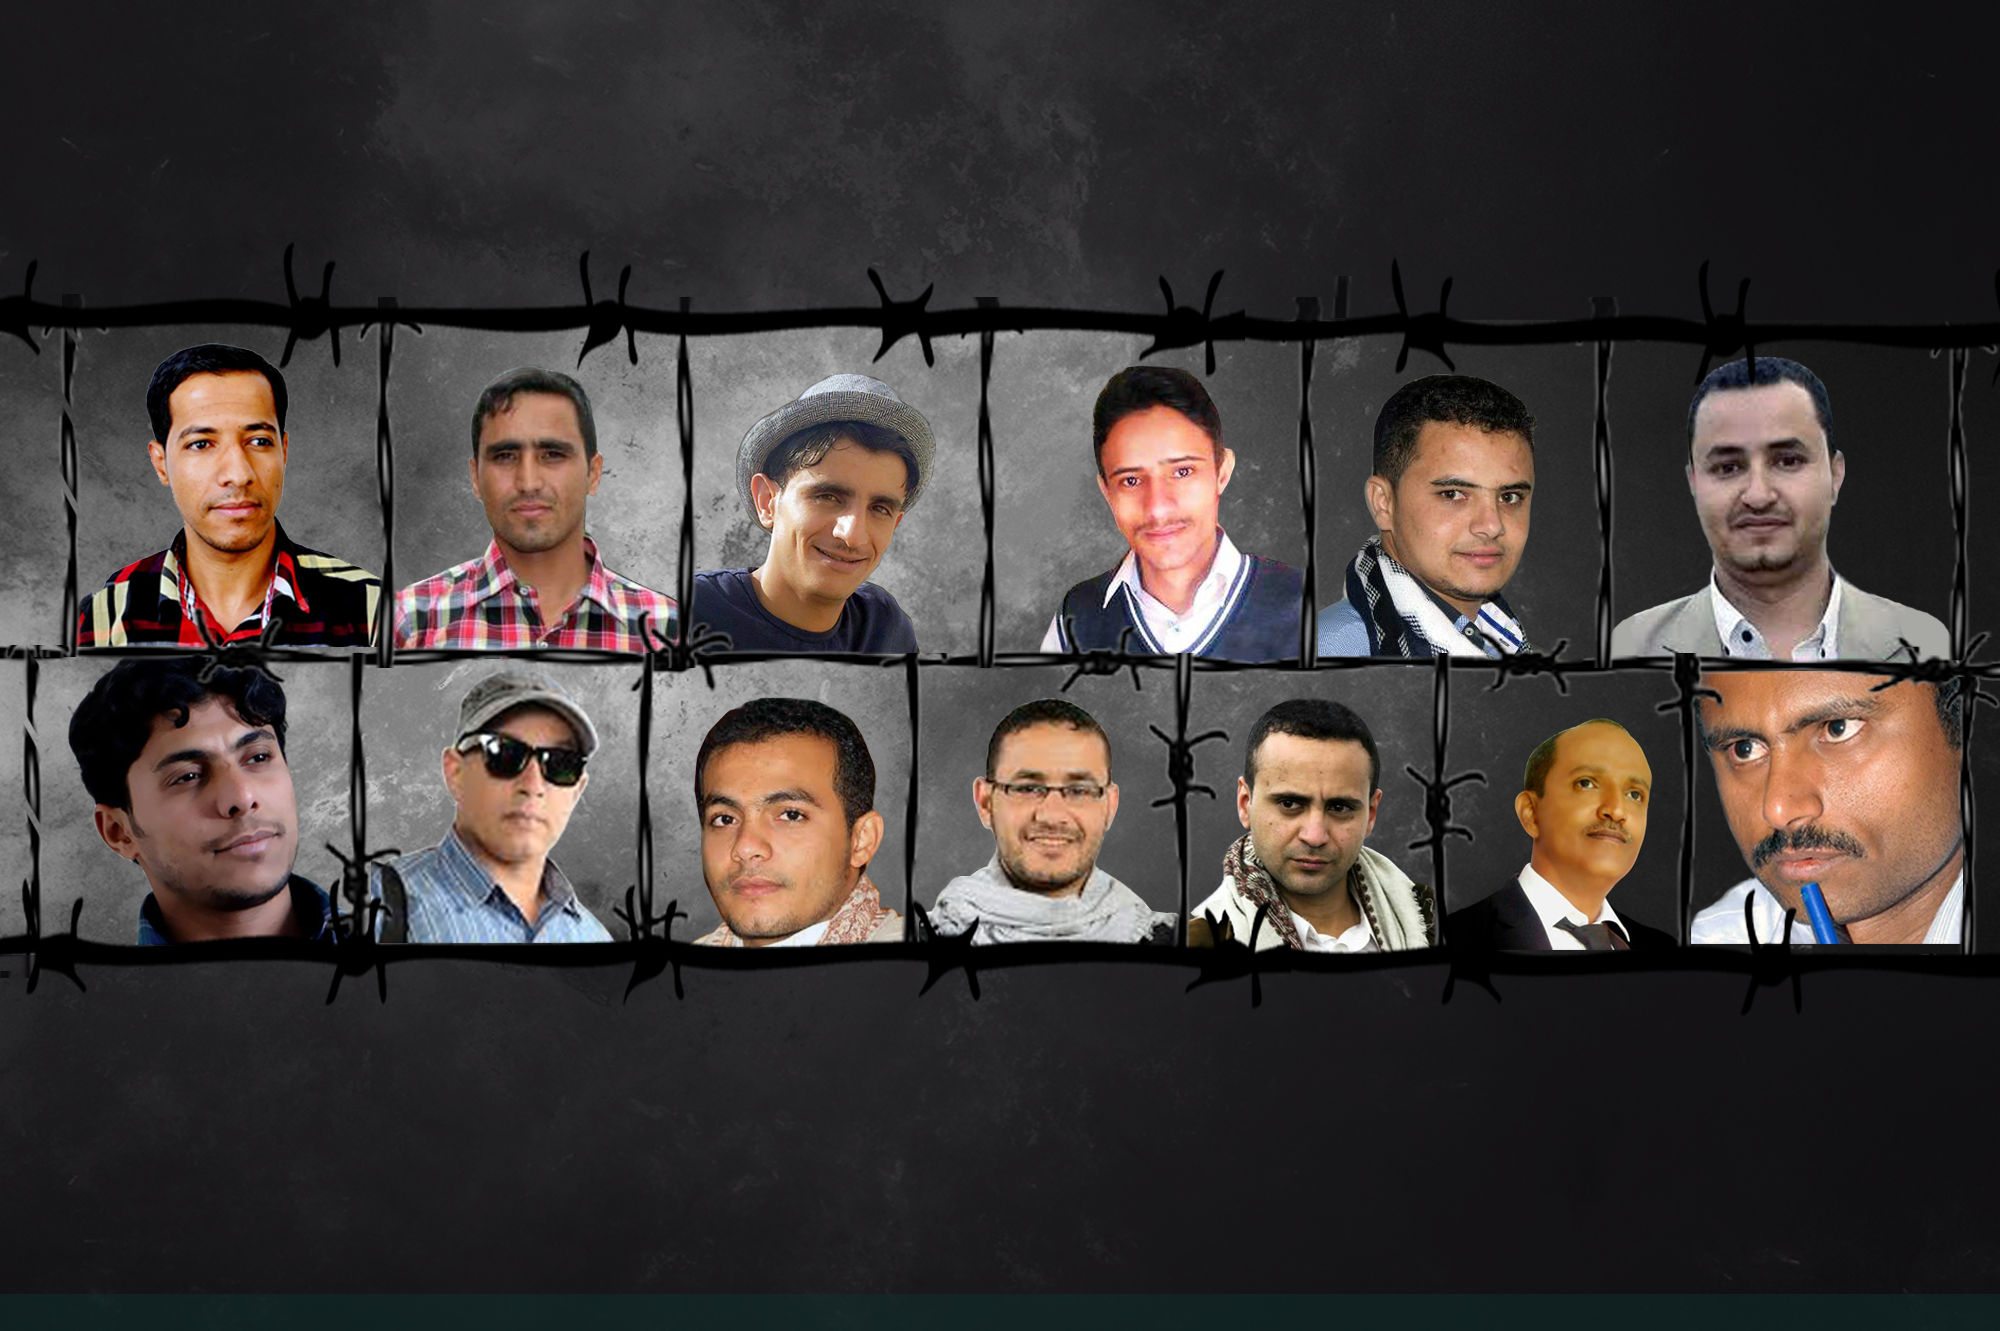 صحيفة الميثاق الناطقة بأسم «حزب صالح» تطالب بالإفراج الفوري عن الصحافيين المعتقلين في صنعاء (صورة)